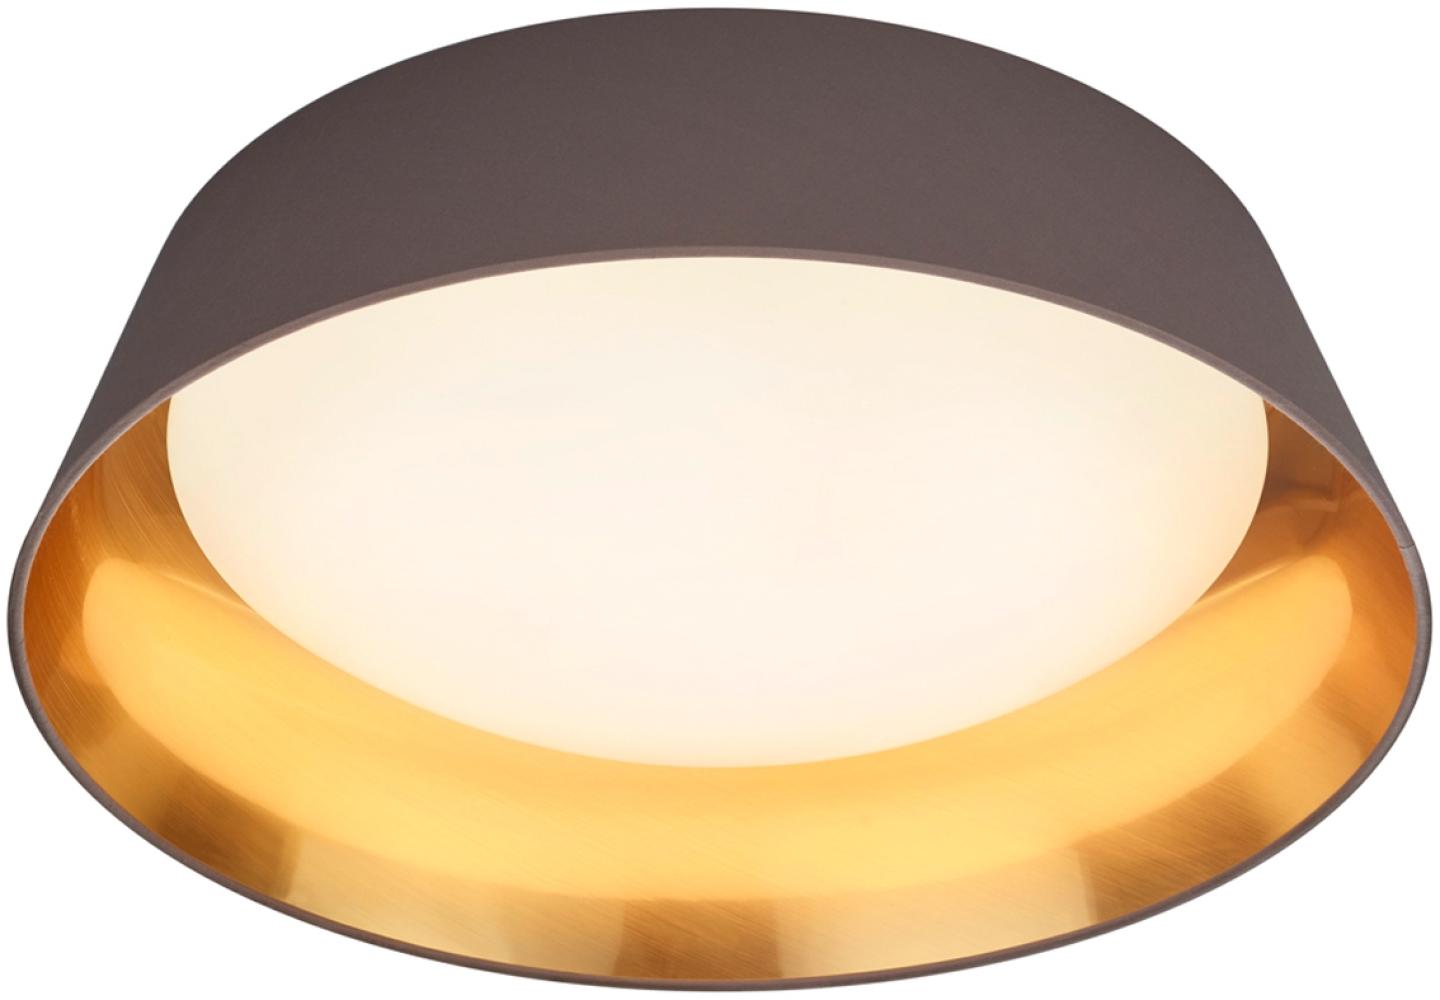 LED Deckenleuchte mit Stofflampenschirm Ø45cm in Braun/Gold Bild 1